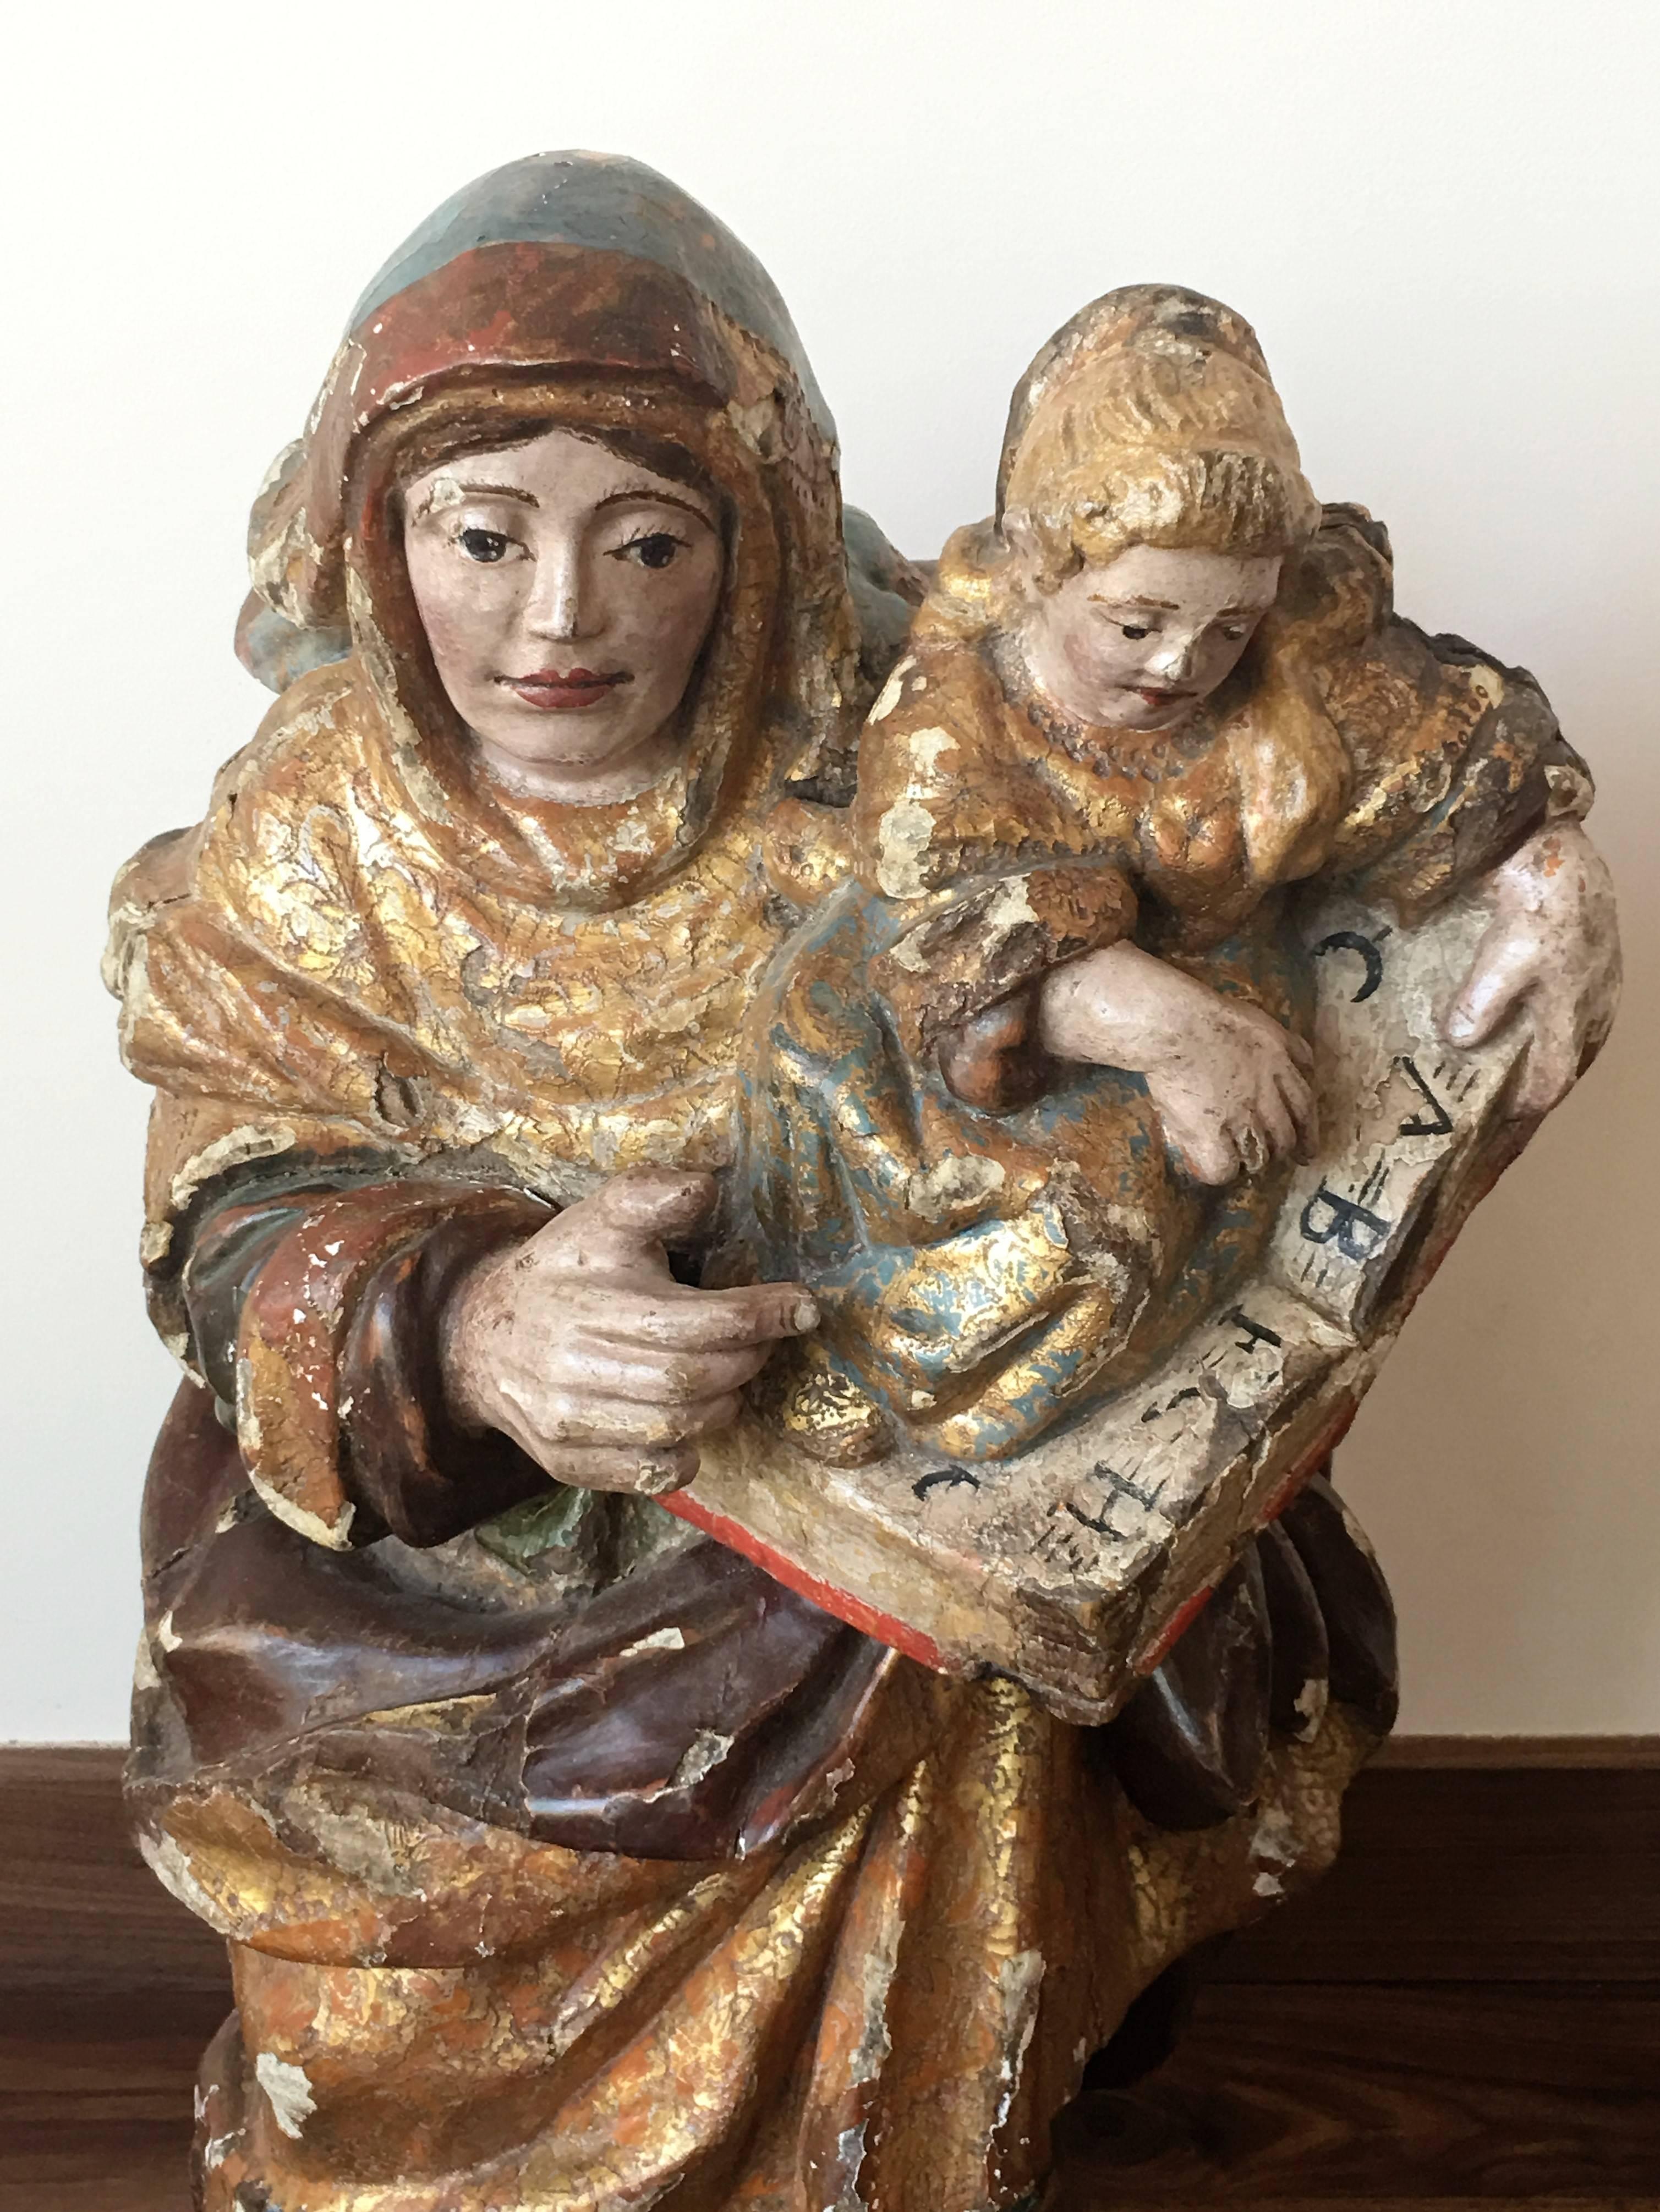 Diese Skulptur stellt Santa Ana (Heilige Anna) mit dem Marienkind dar.

Verge.
   